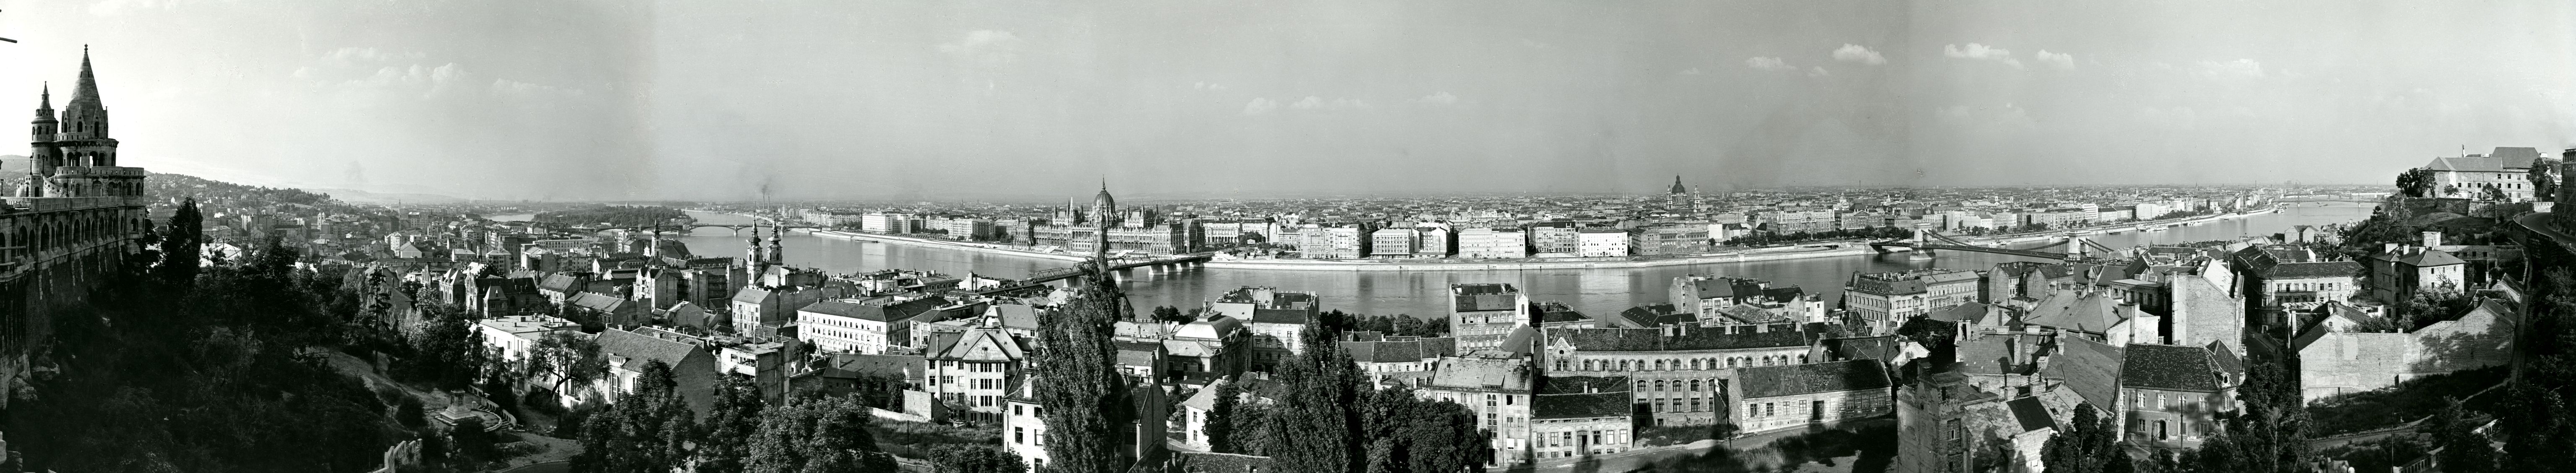 Látkép a II. világháború után az Országház és a Batthyány tér között épített ideiglenes Kossuth híddal, a távolban a felújított Lánchíddal és Margit híddal, 1950-es évek (BFL XV.19.c.11)